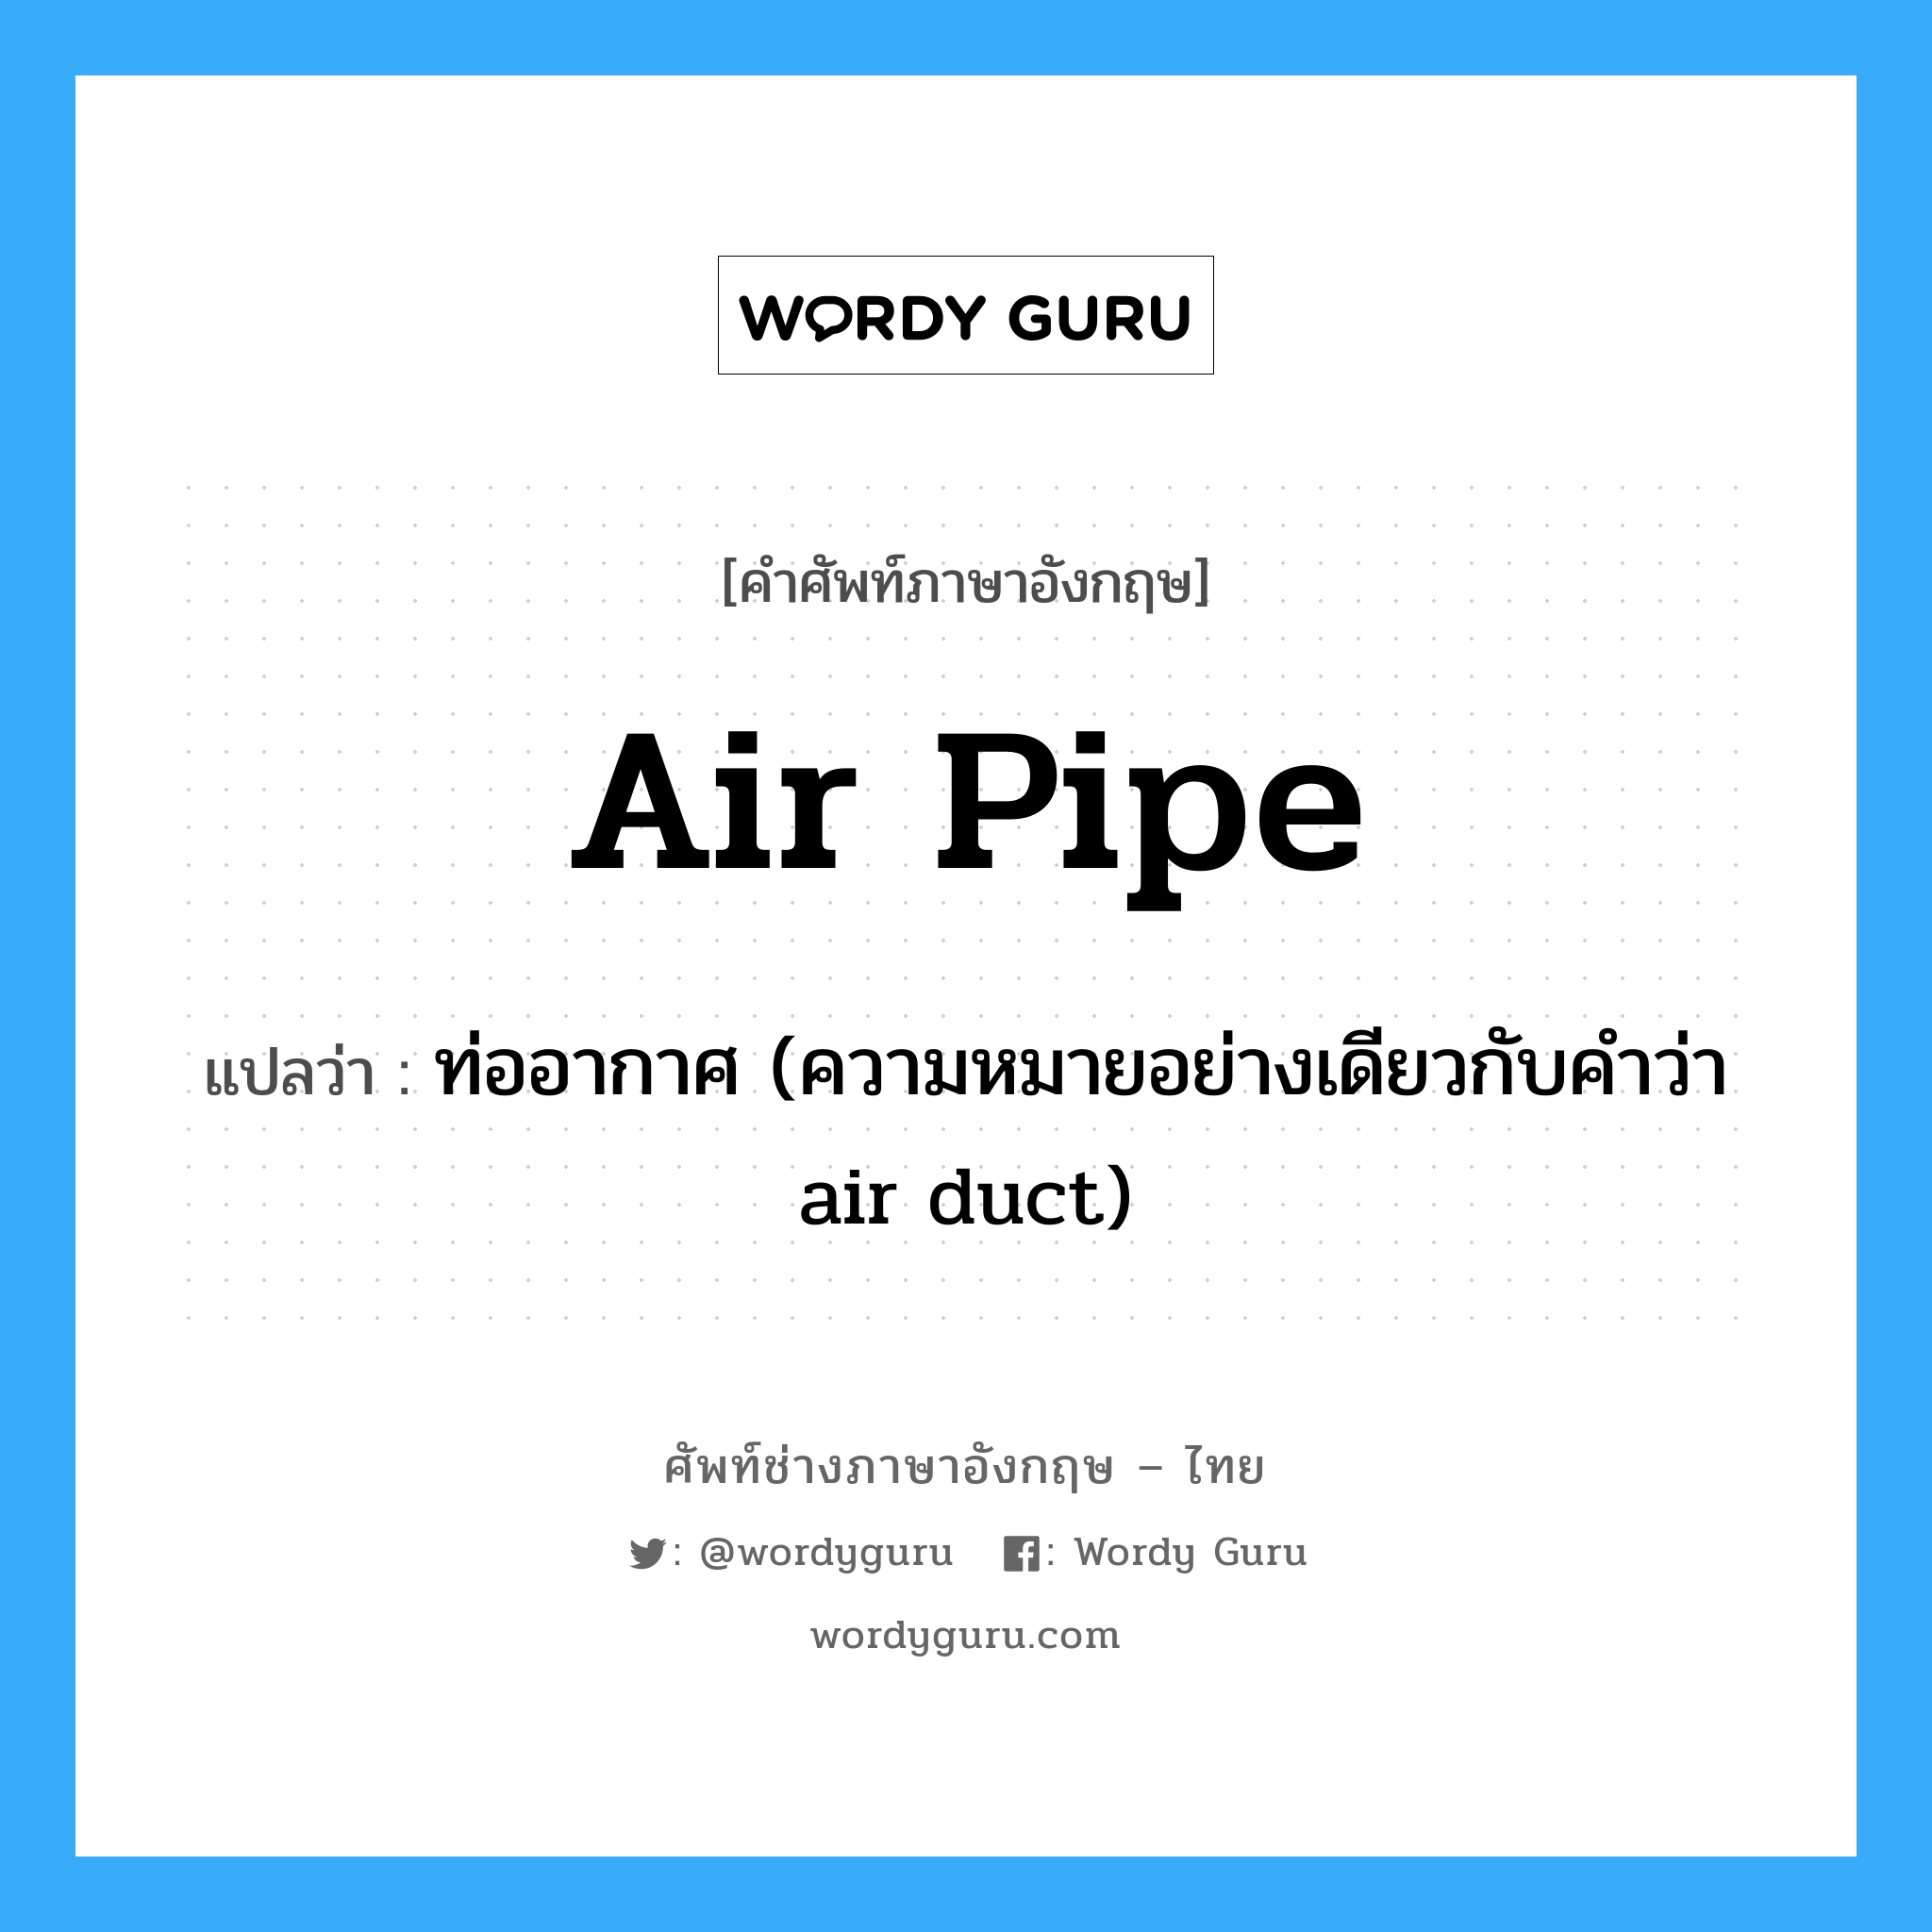 air pipe แปลว่า?, คำศัพท์ช่างภาษาอังกฤษ - ไทย air pipe คำศัพท์ภาษาอังกฤษ air pipe แปลว่า ท่ออากาศ (ความหมายอย่างเดียวกับคำว่า air duct)